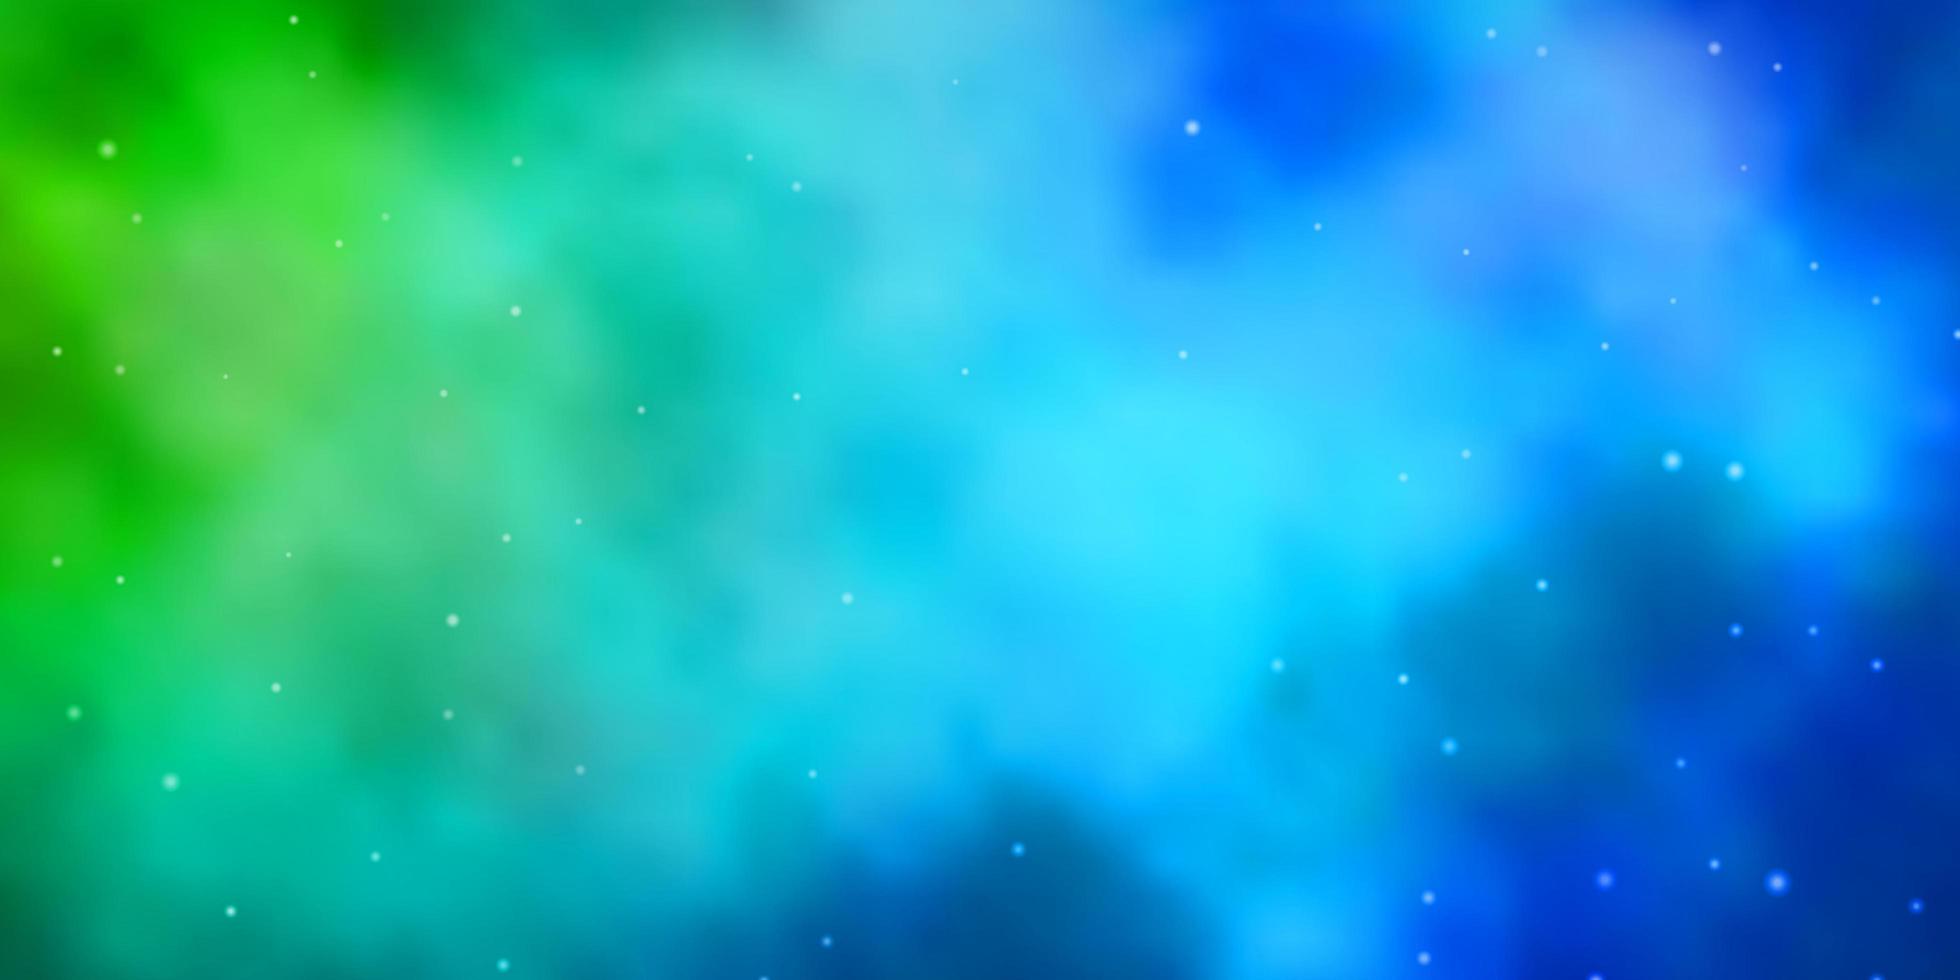 lichtblauwe, groene lay-out met heldere sterren. vector